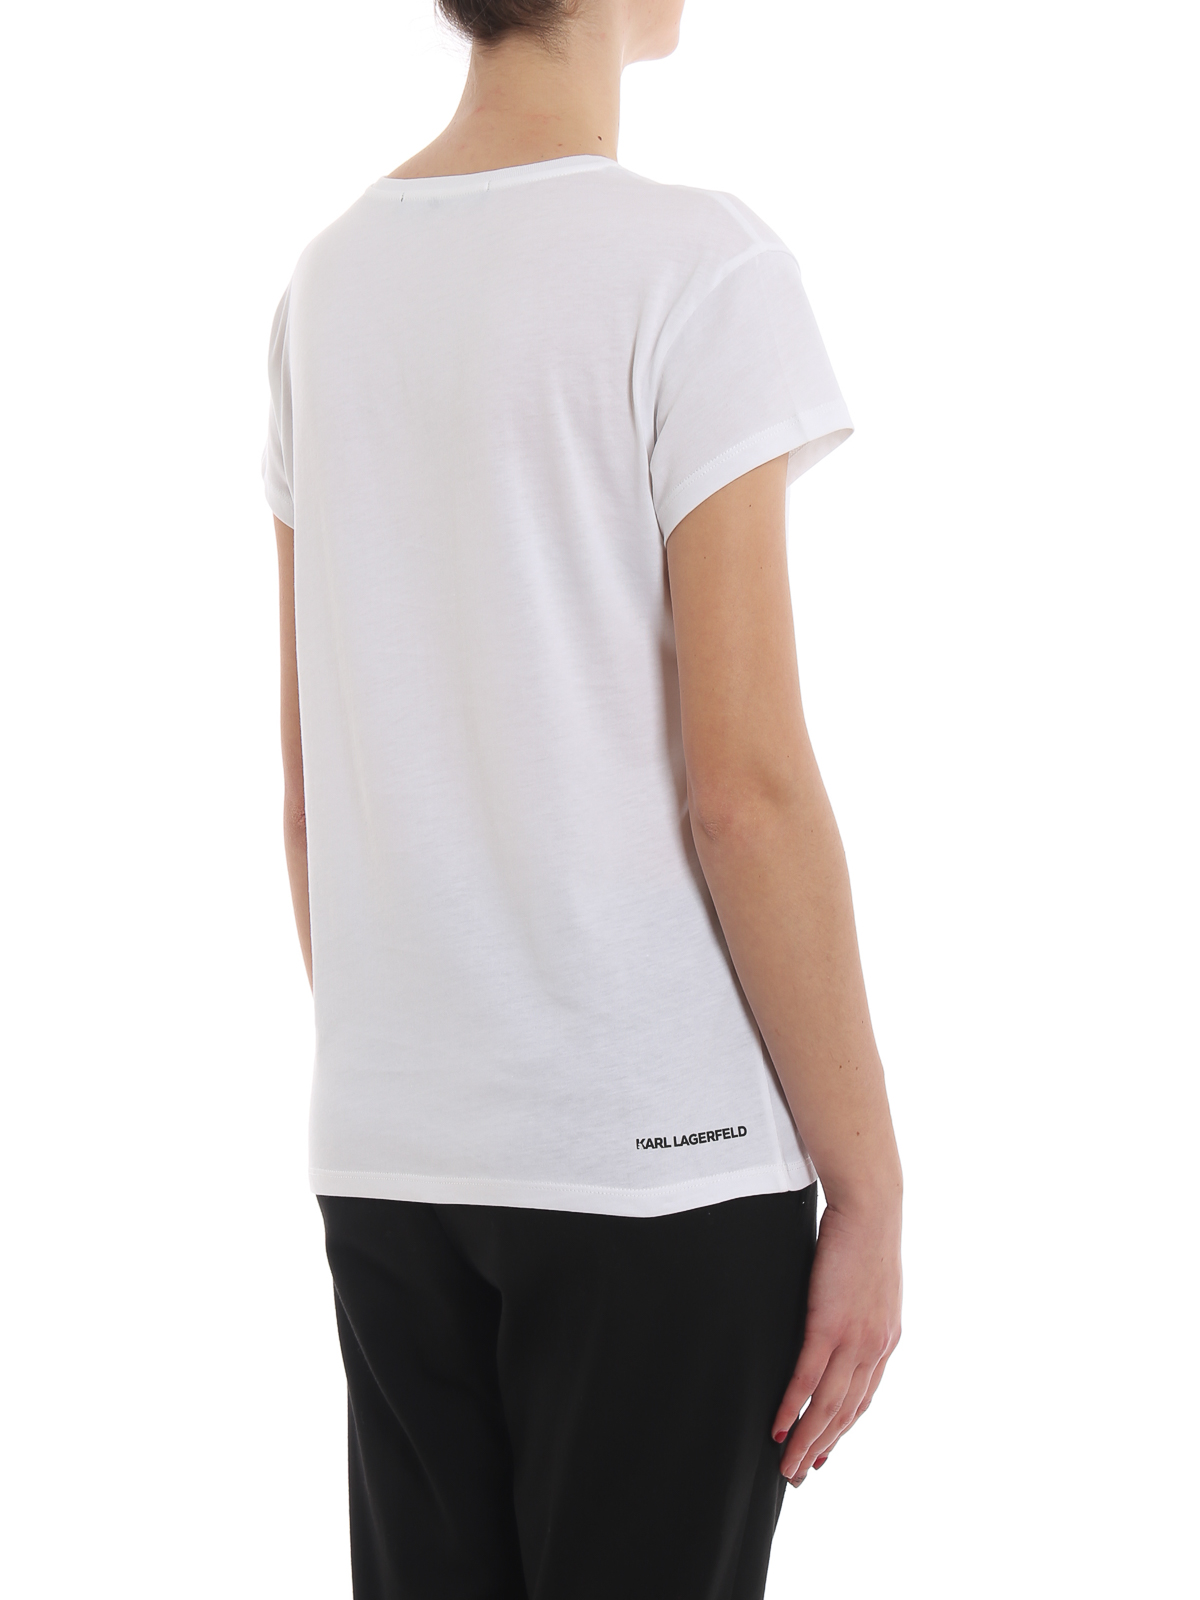 Shop Karl Lagerfeld Ikonik White Cotton T-shirt